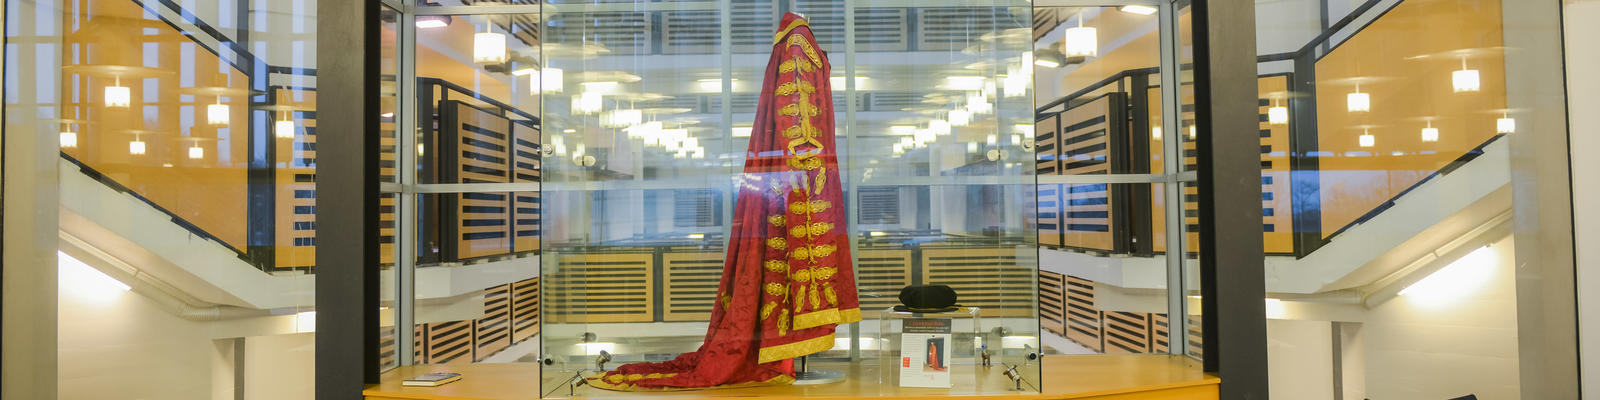 51福利 Chancellor's robes in glass cabinet within the Library building